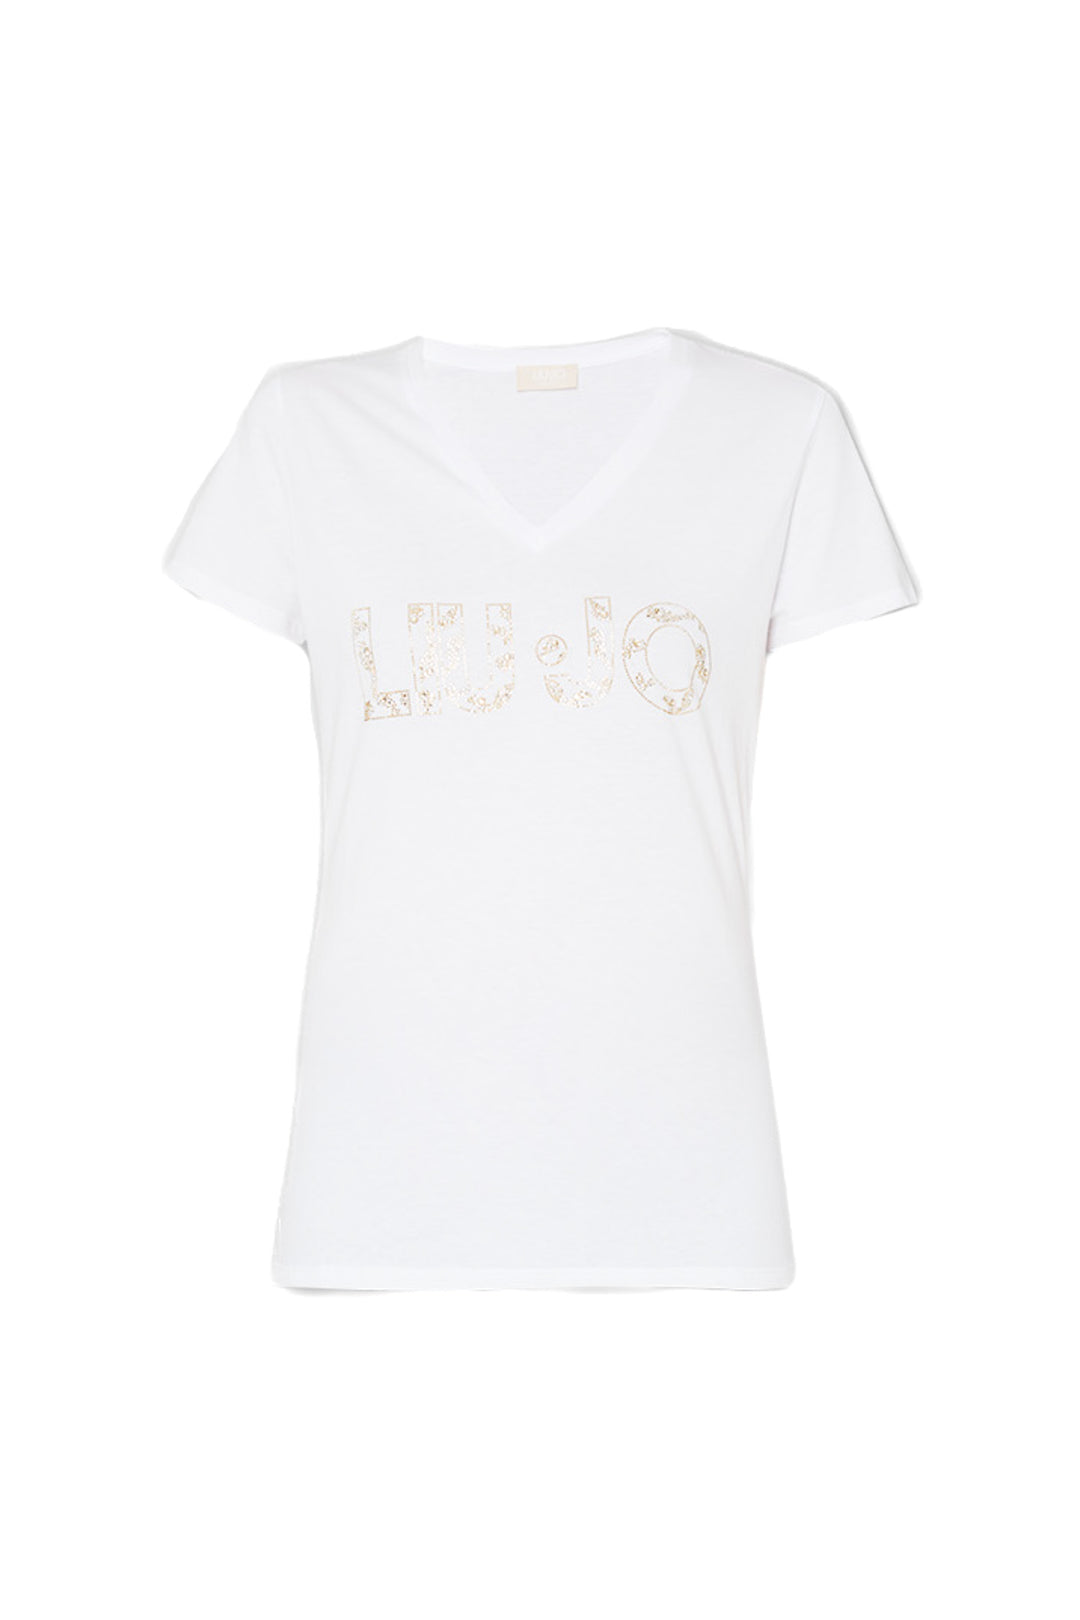 LIU JO T-shirt bianca ecosostenibile in cotone con logo - Mancinelli 1954